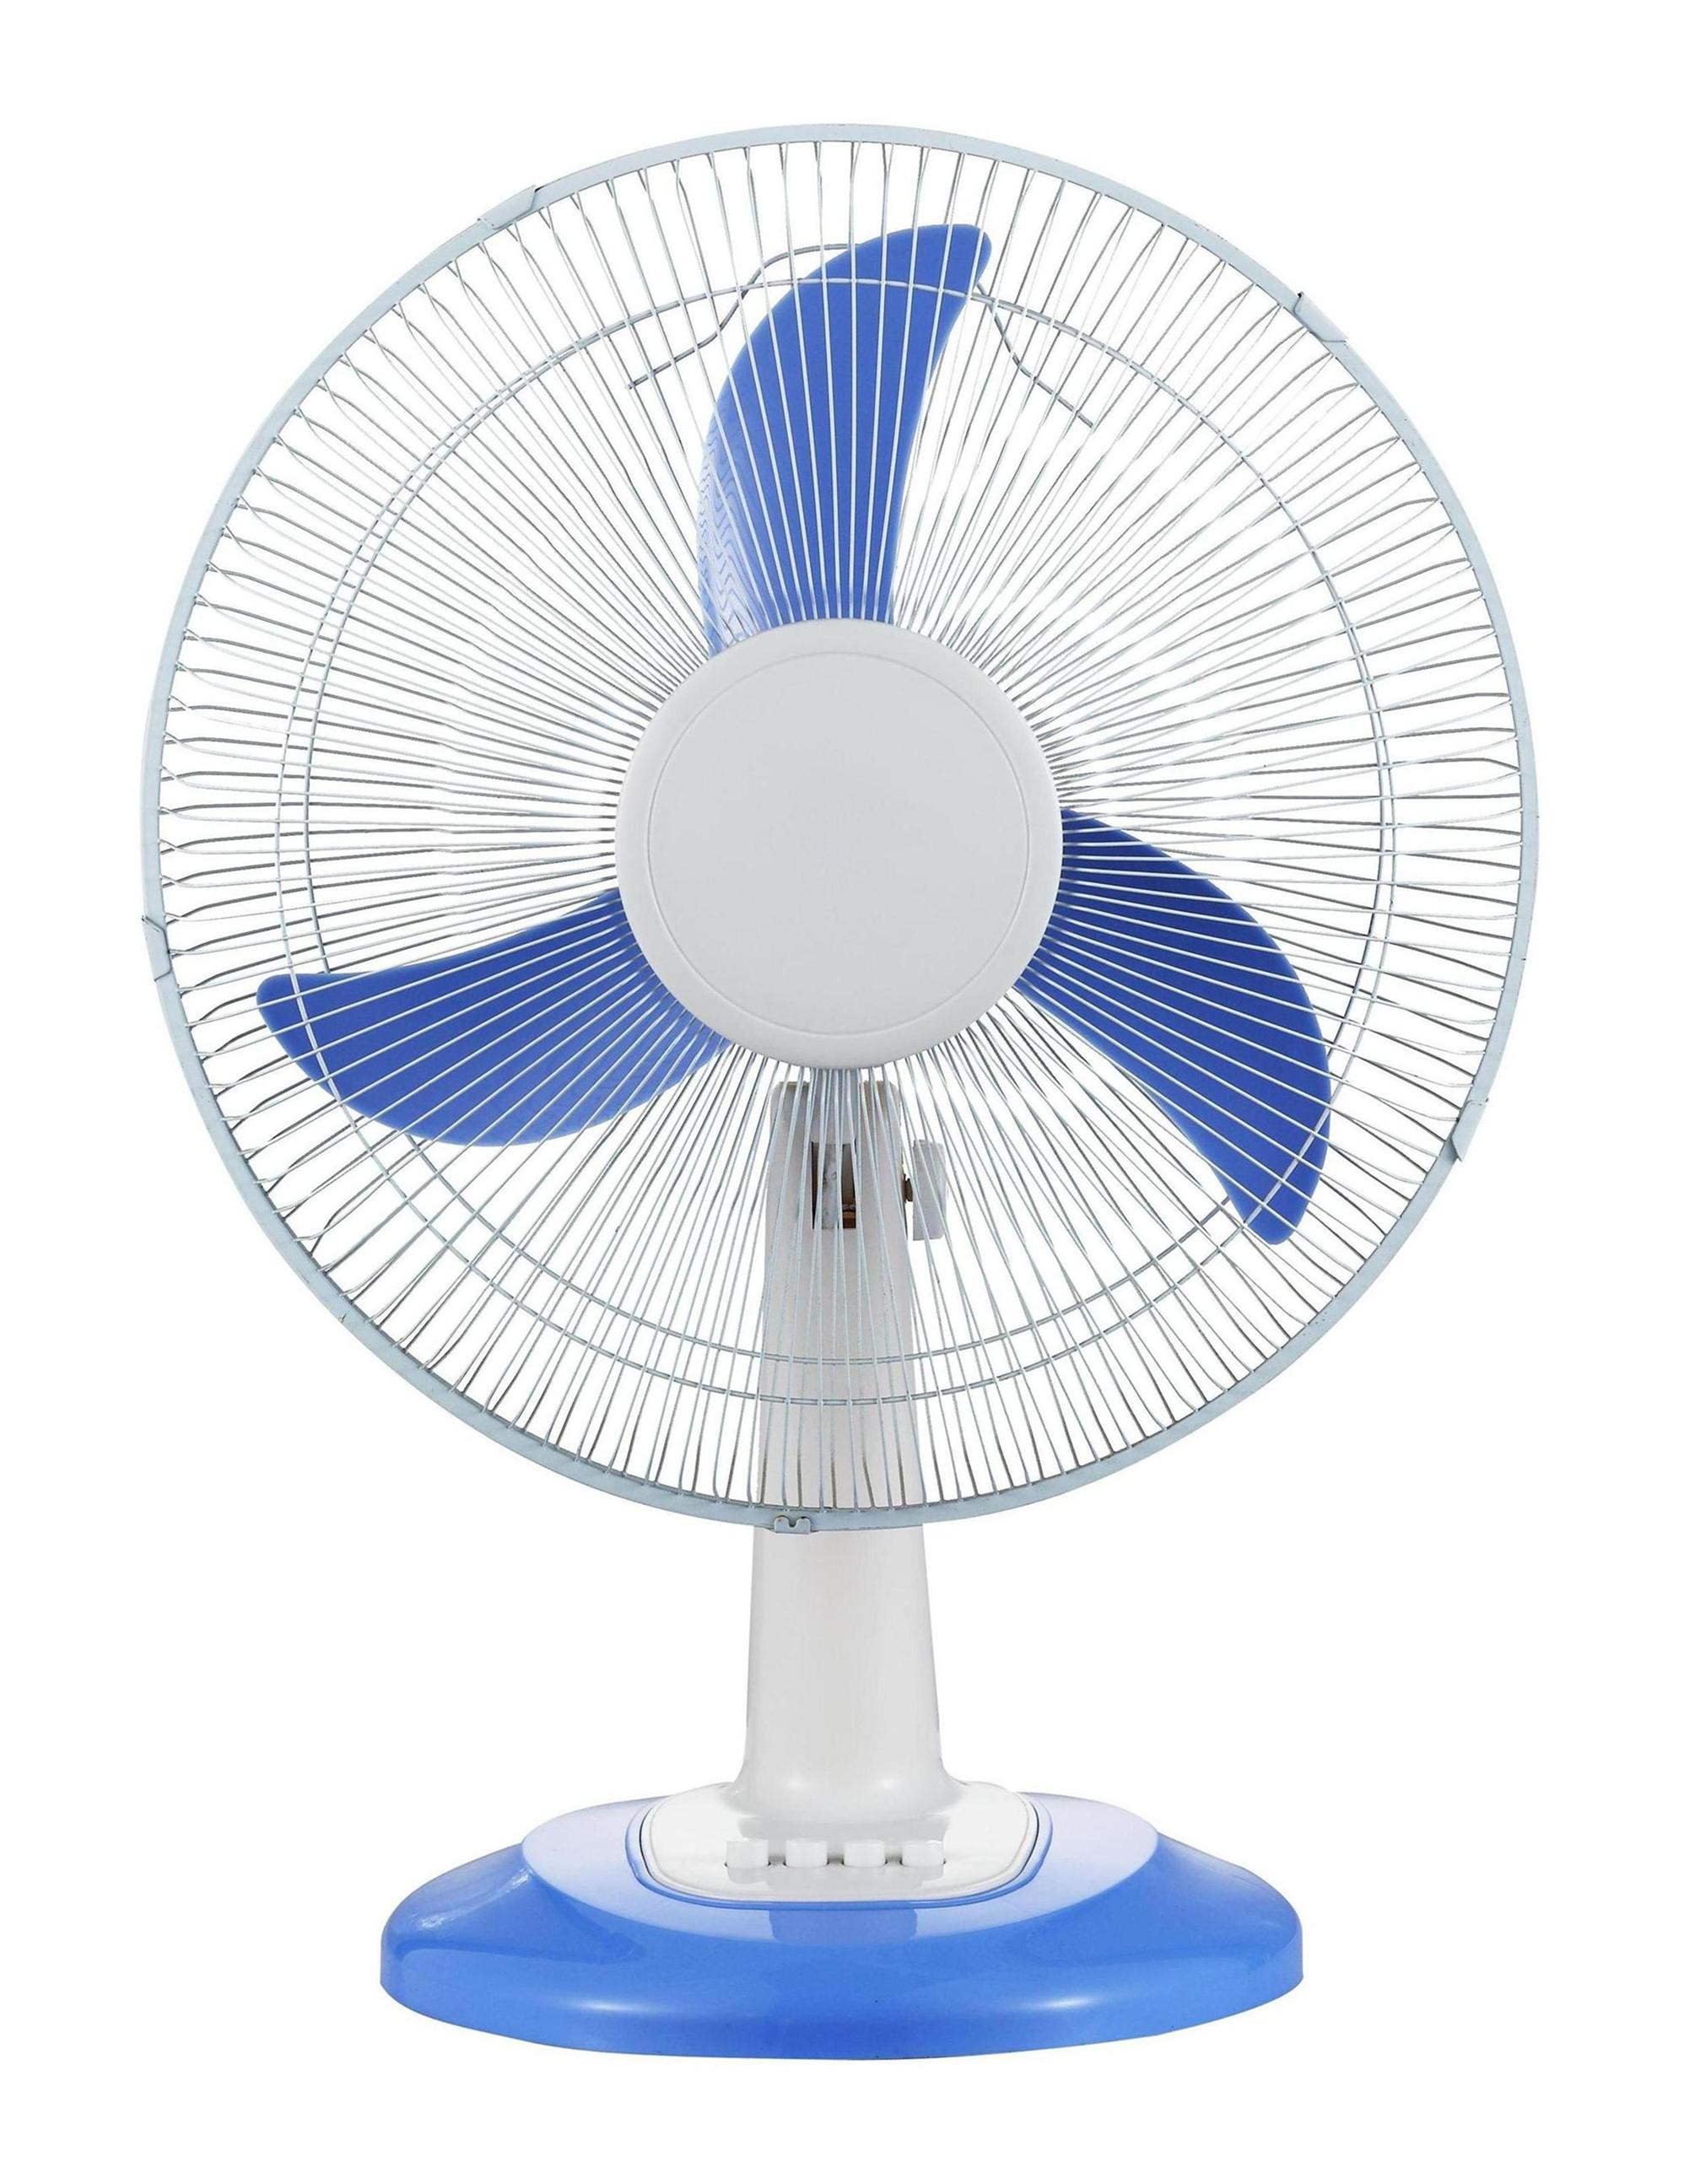 DC fan, rechargeabel fan, solar dc fan